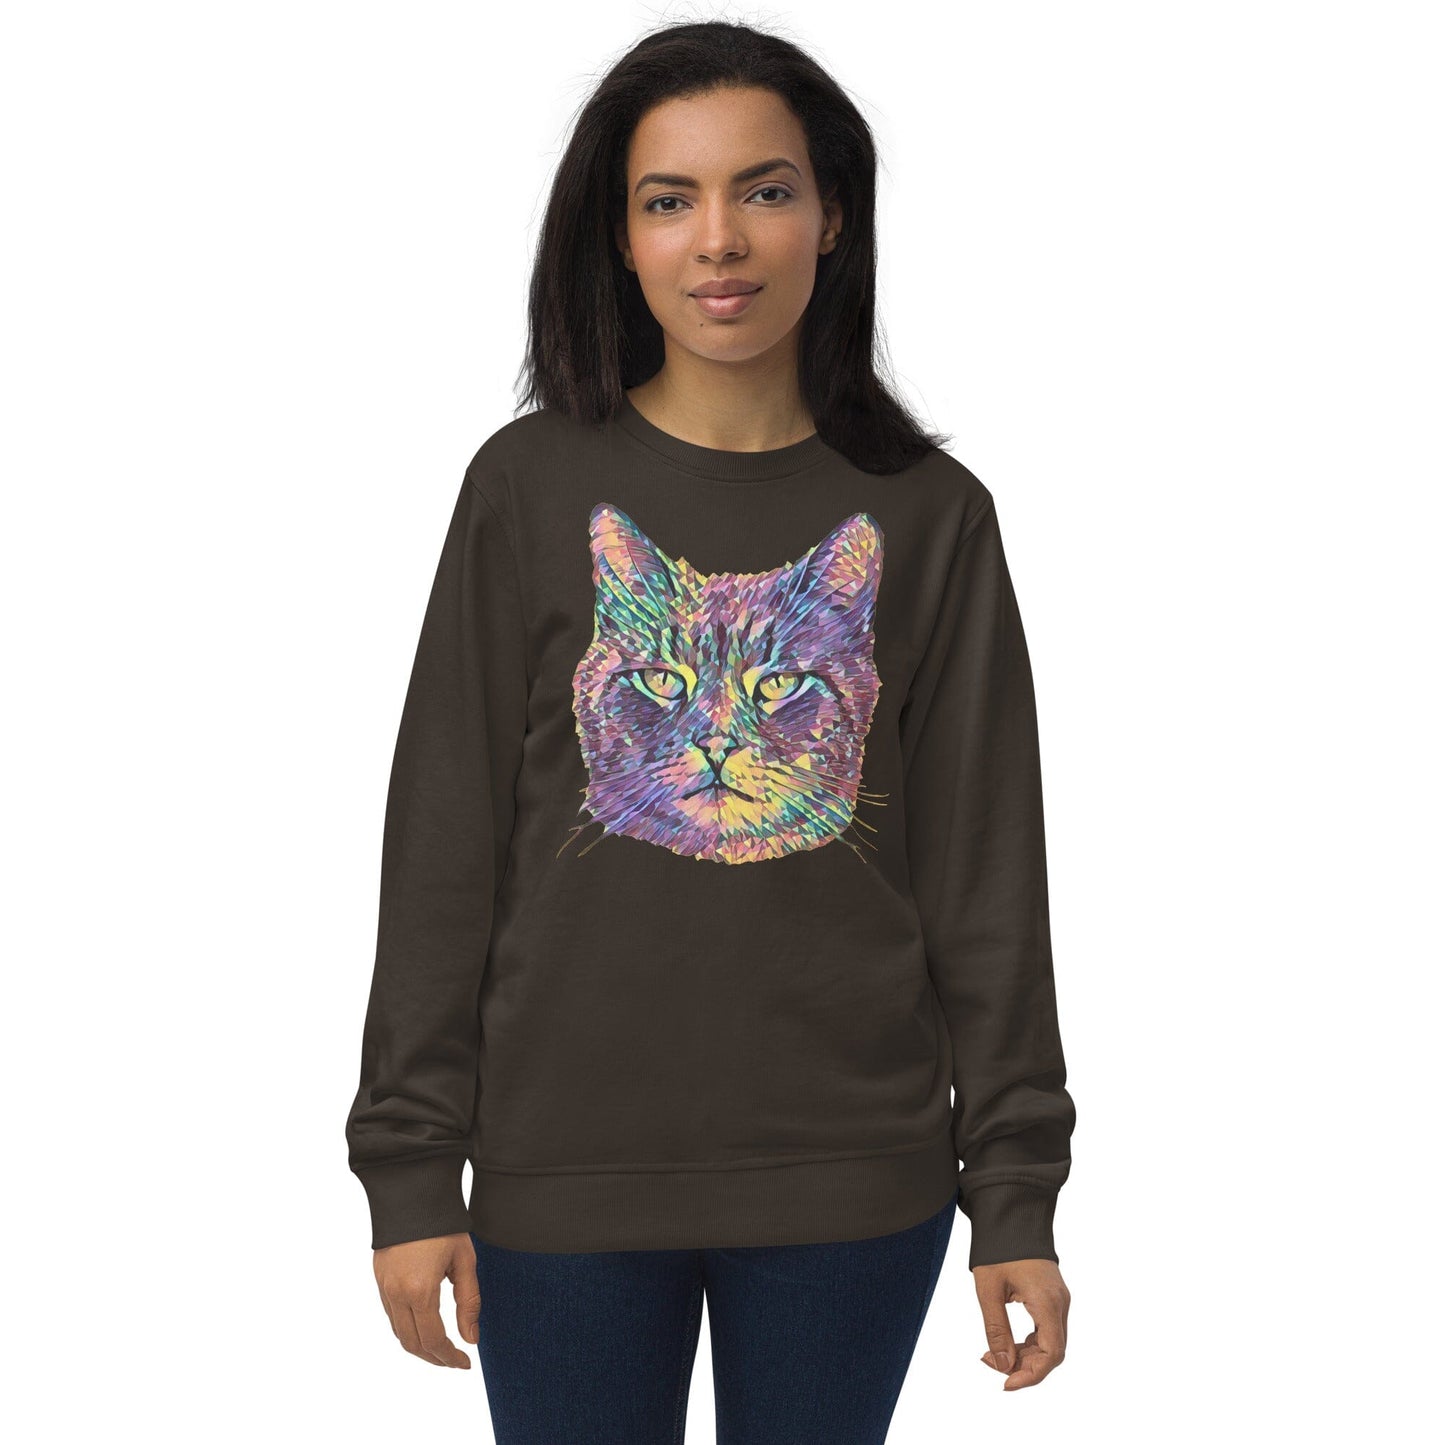 Cat Unisex Organic Sweatshirt JoyousJoyfulJoyness Deep Charcoal Grey S 